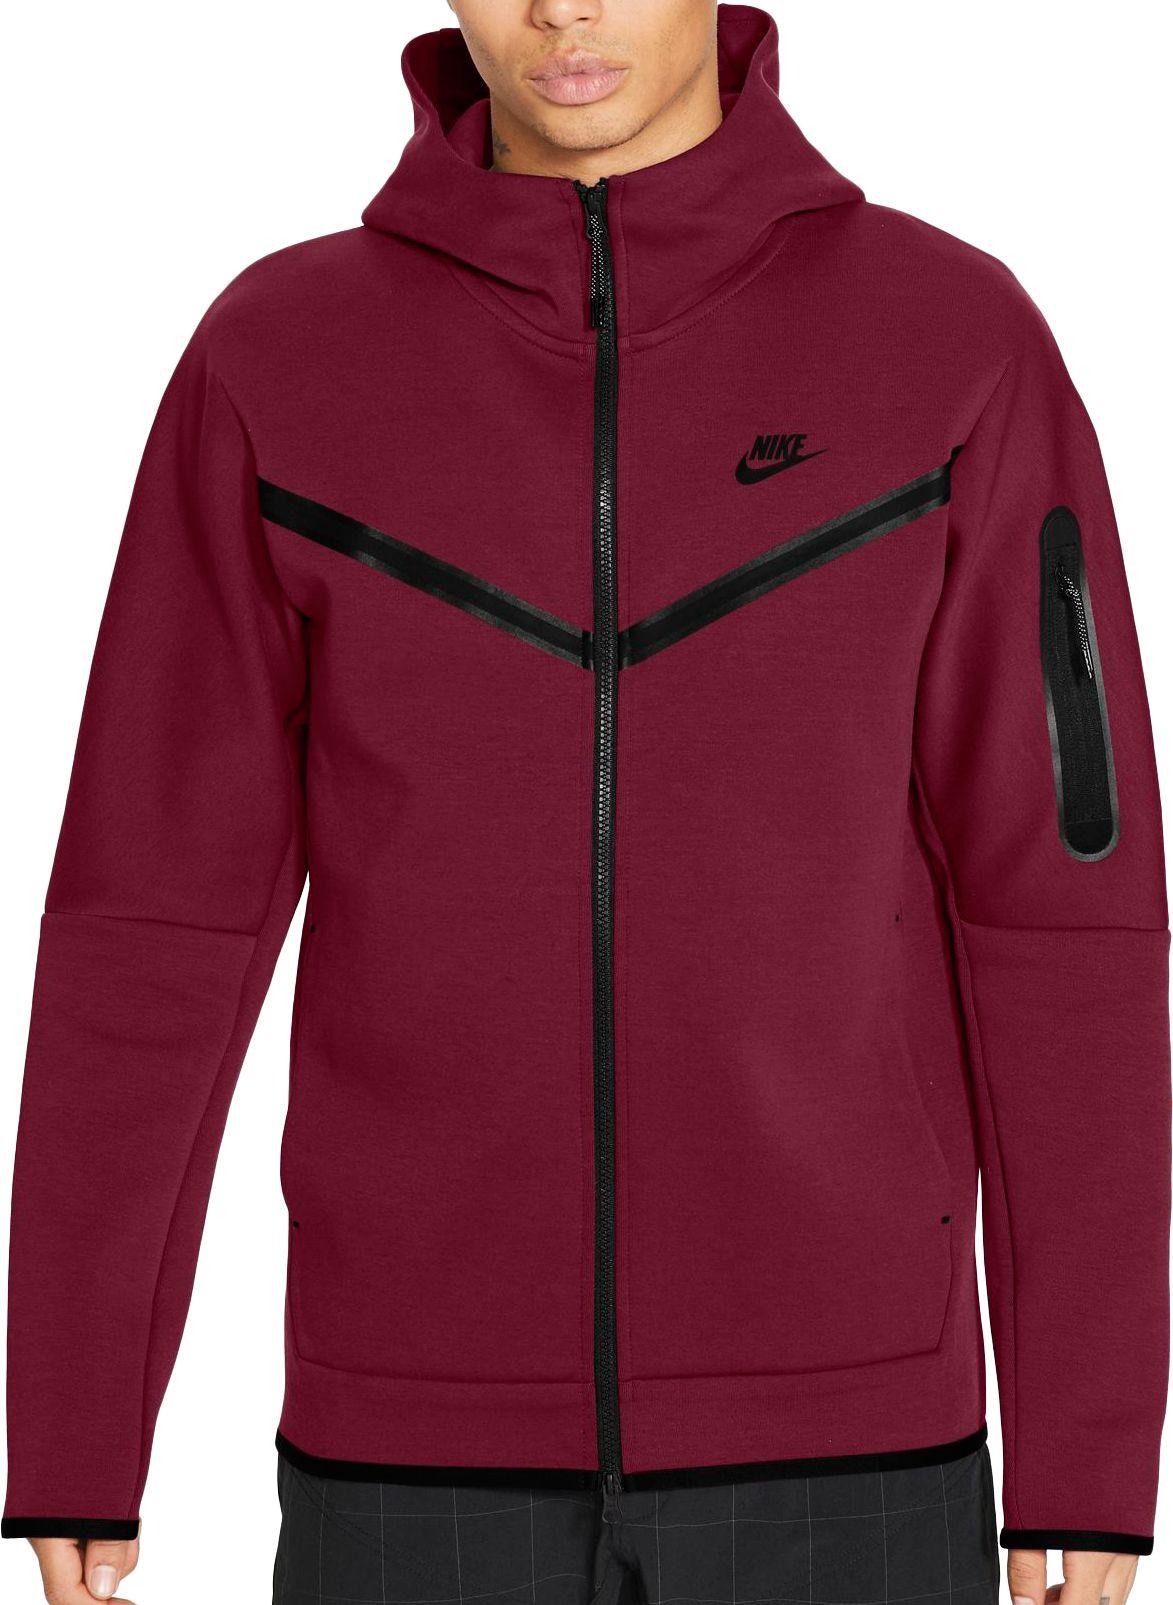 Nike Sportswear Tech Fleece Full Zip Hoodie in Red for Men - Lyst